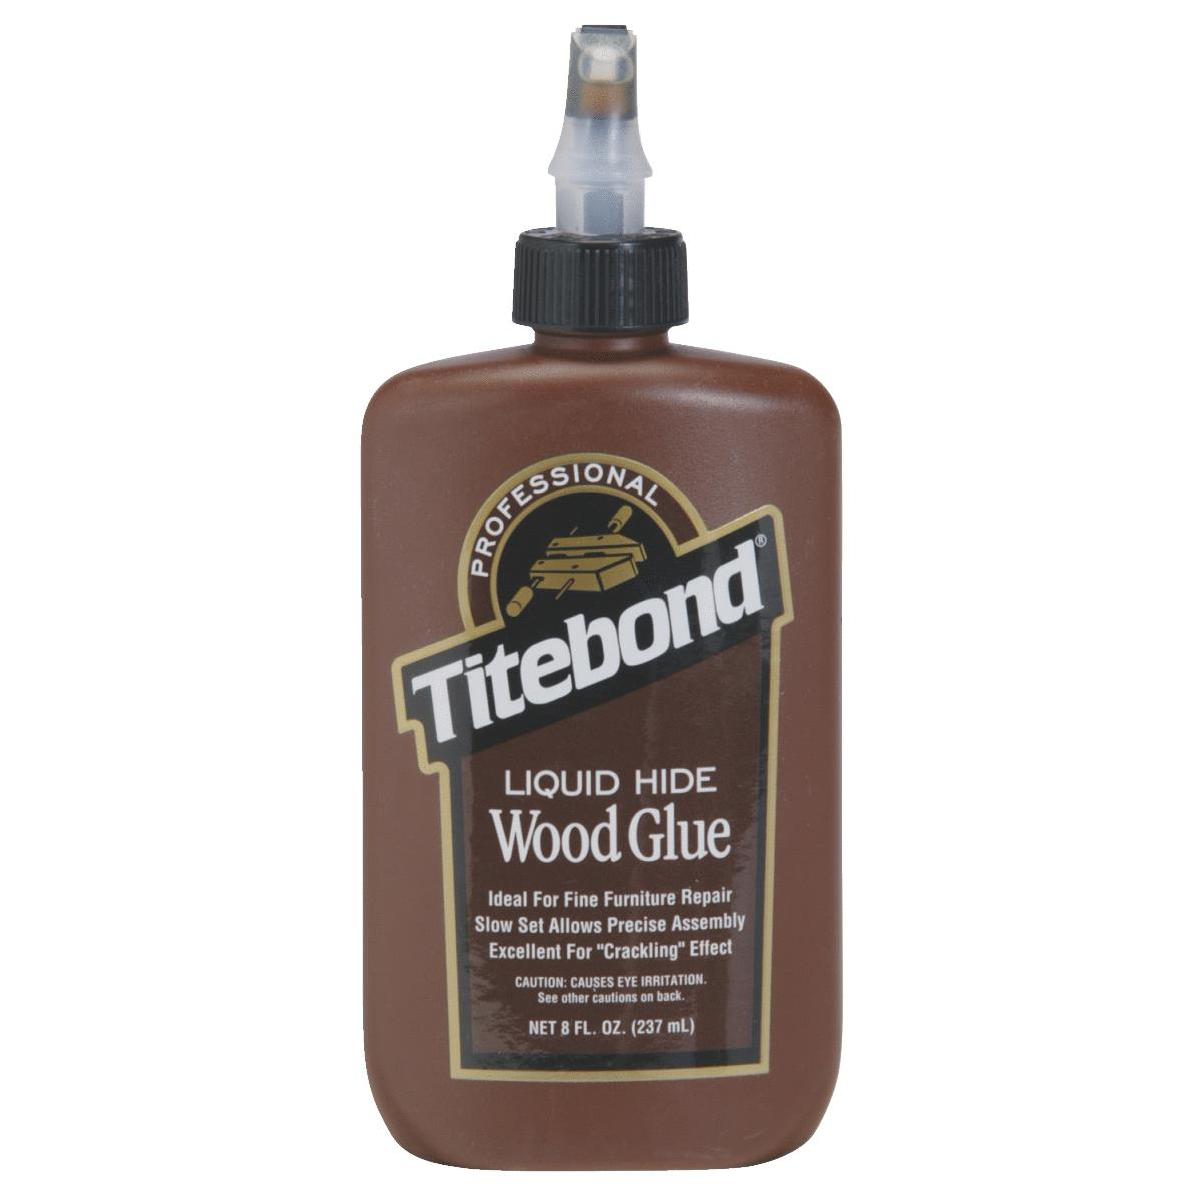 Клей титебонд купить. Клей Titebond 2 для дерева 118 мл. Titebond Liquid Hide Glue. Клей для гитары акустической Titebond. Titebond Liquid Hide Wood Glue клей для дерева.